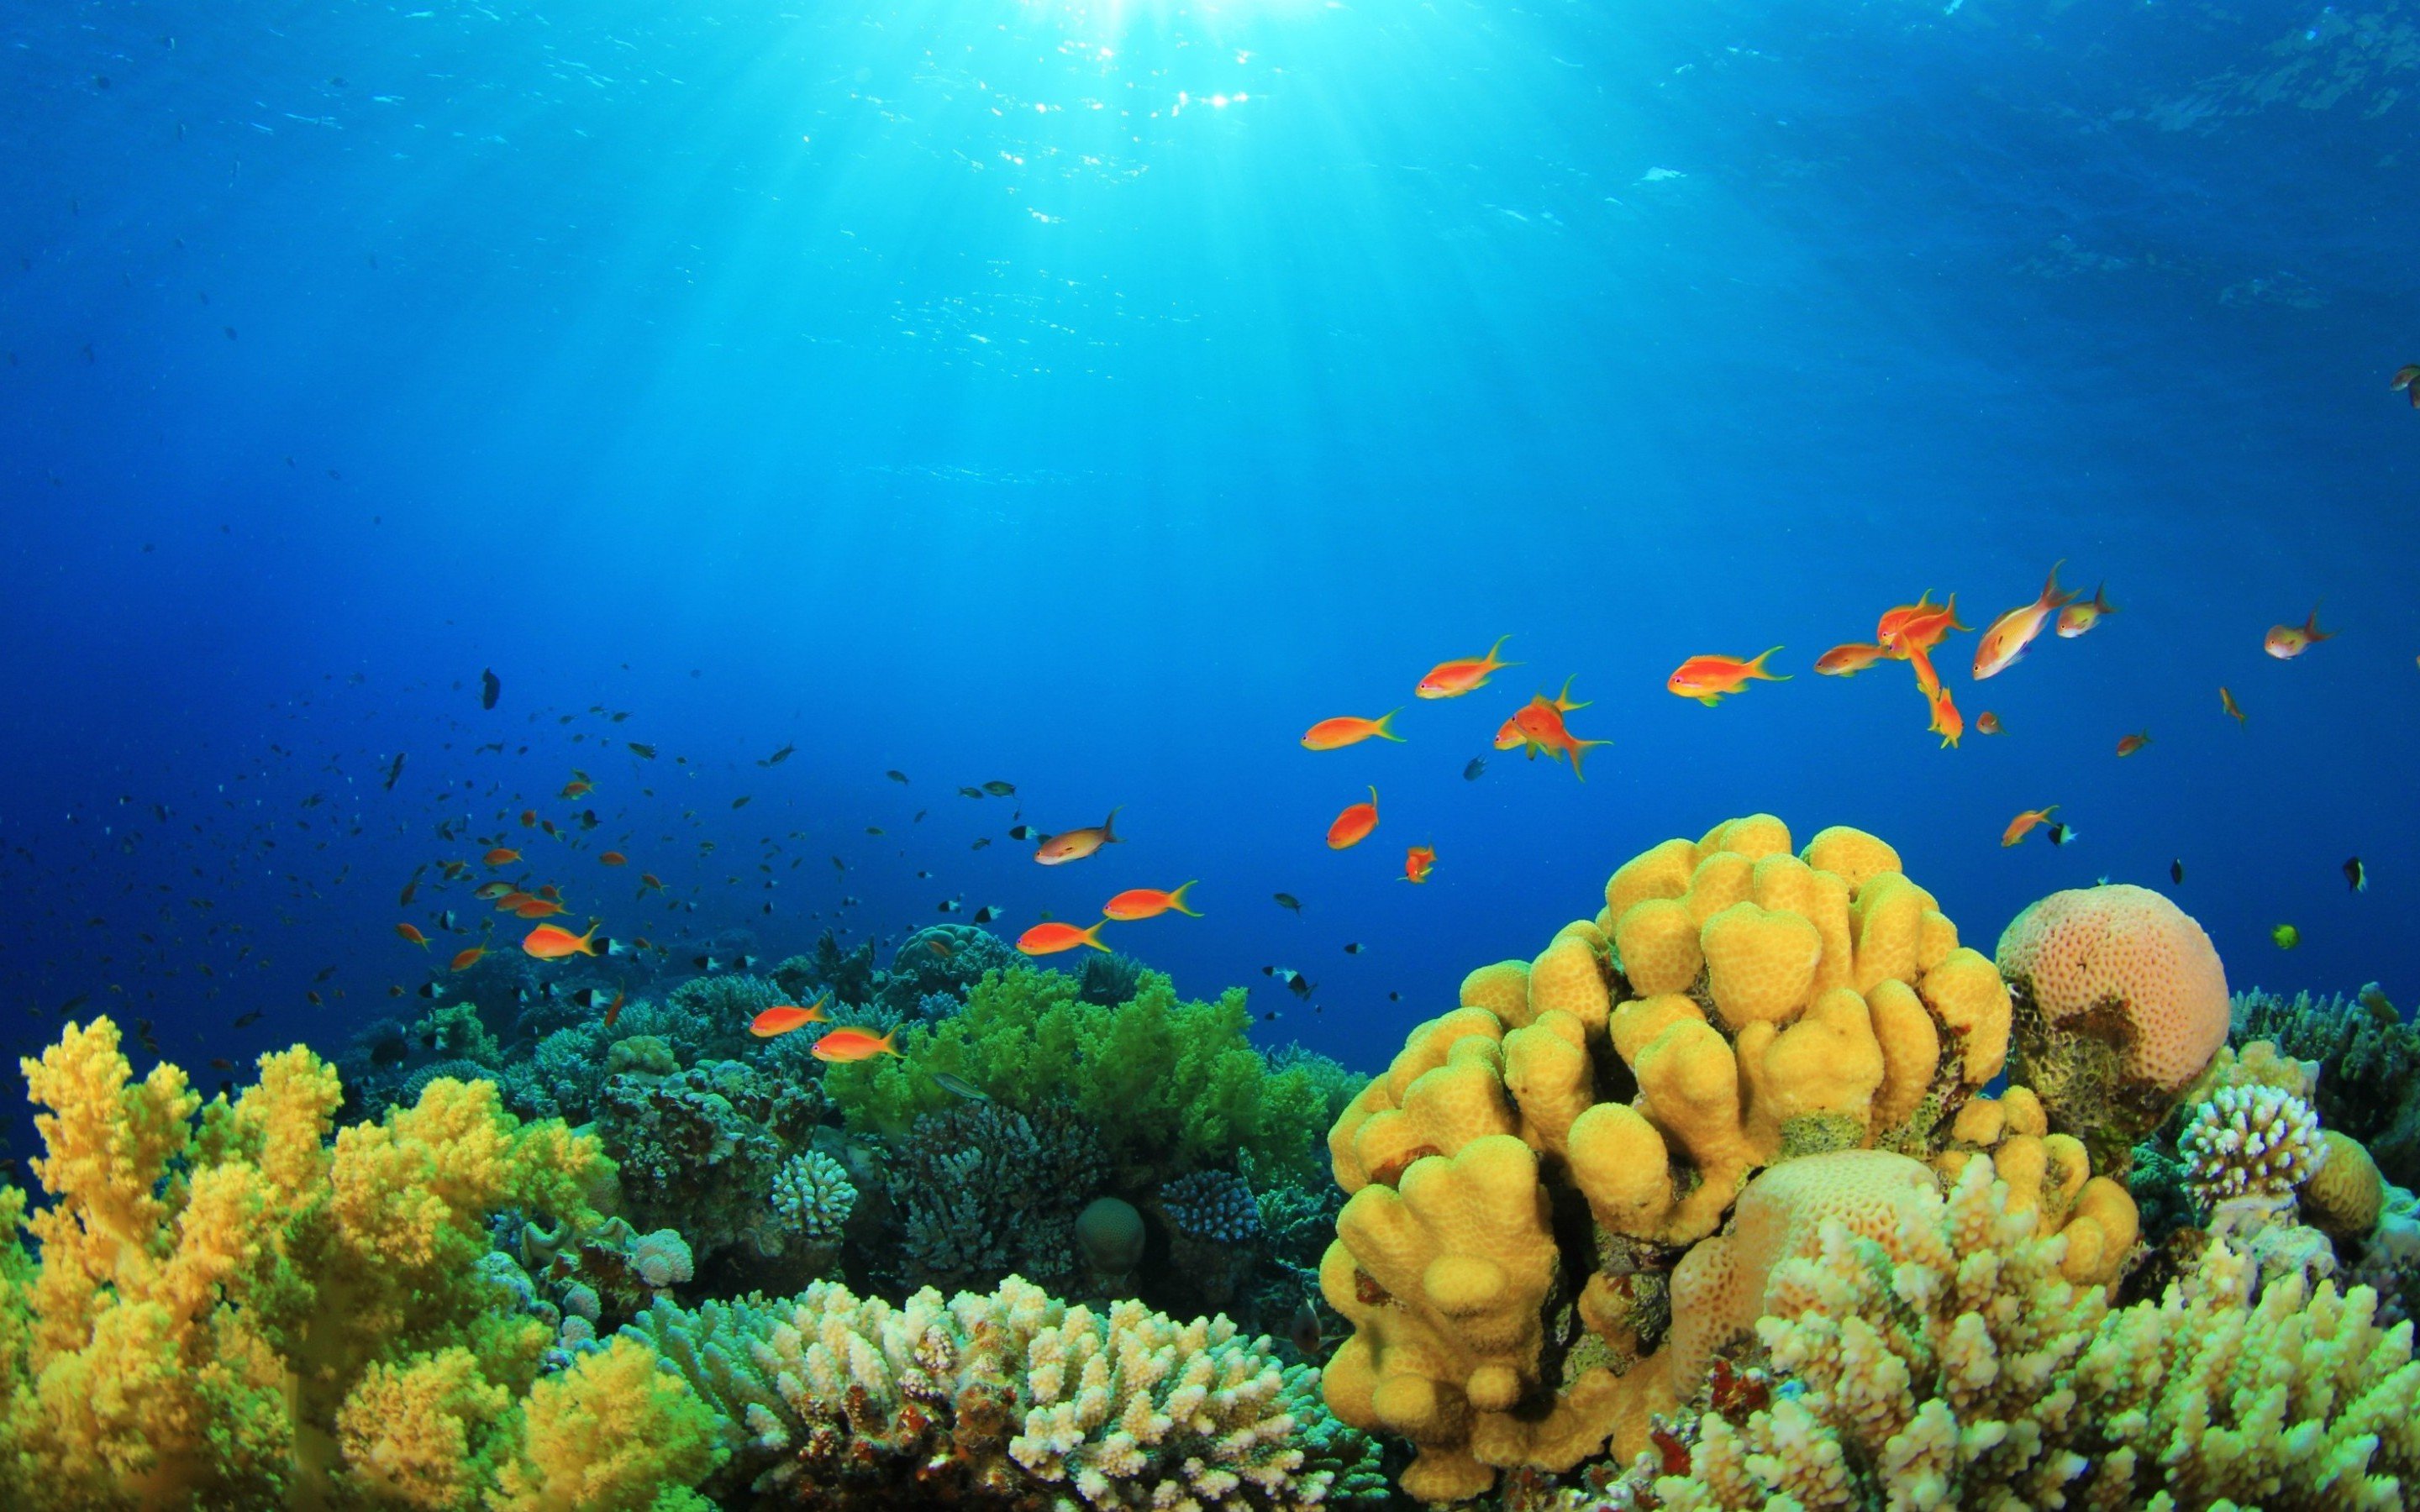 fondos de pantalla fundo do mar,arrecife de coral,arrecife,submarino,biología marina,naturaleza